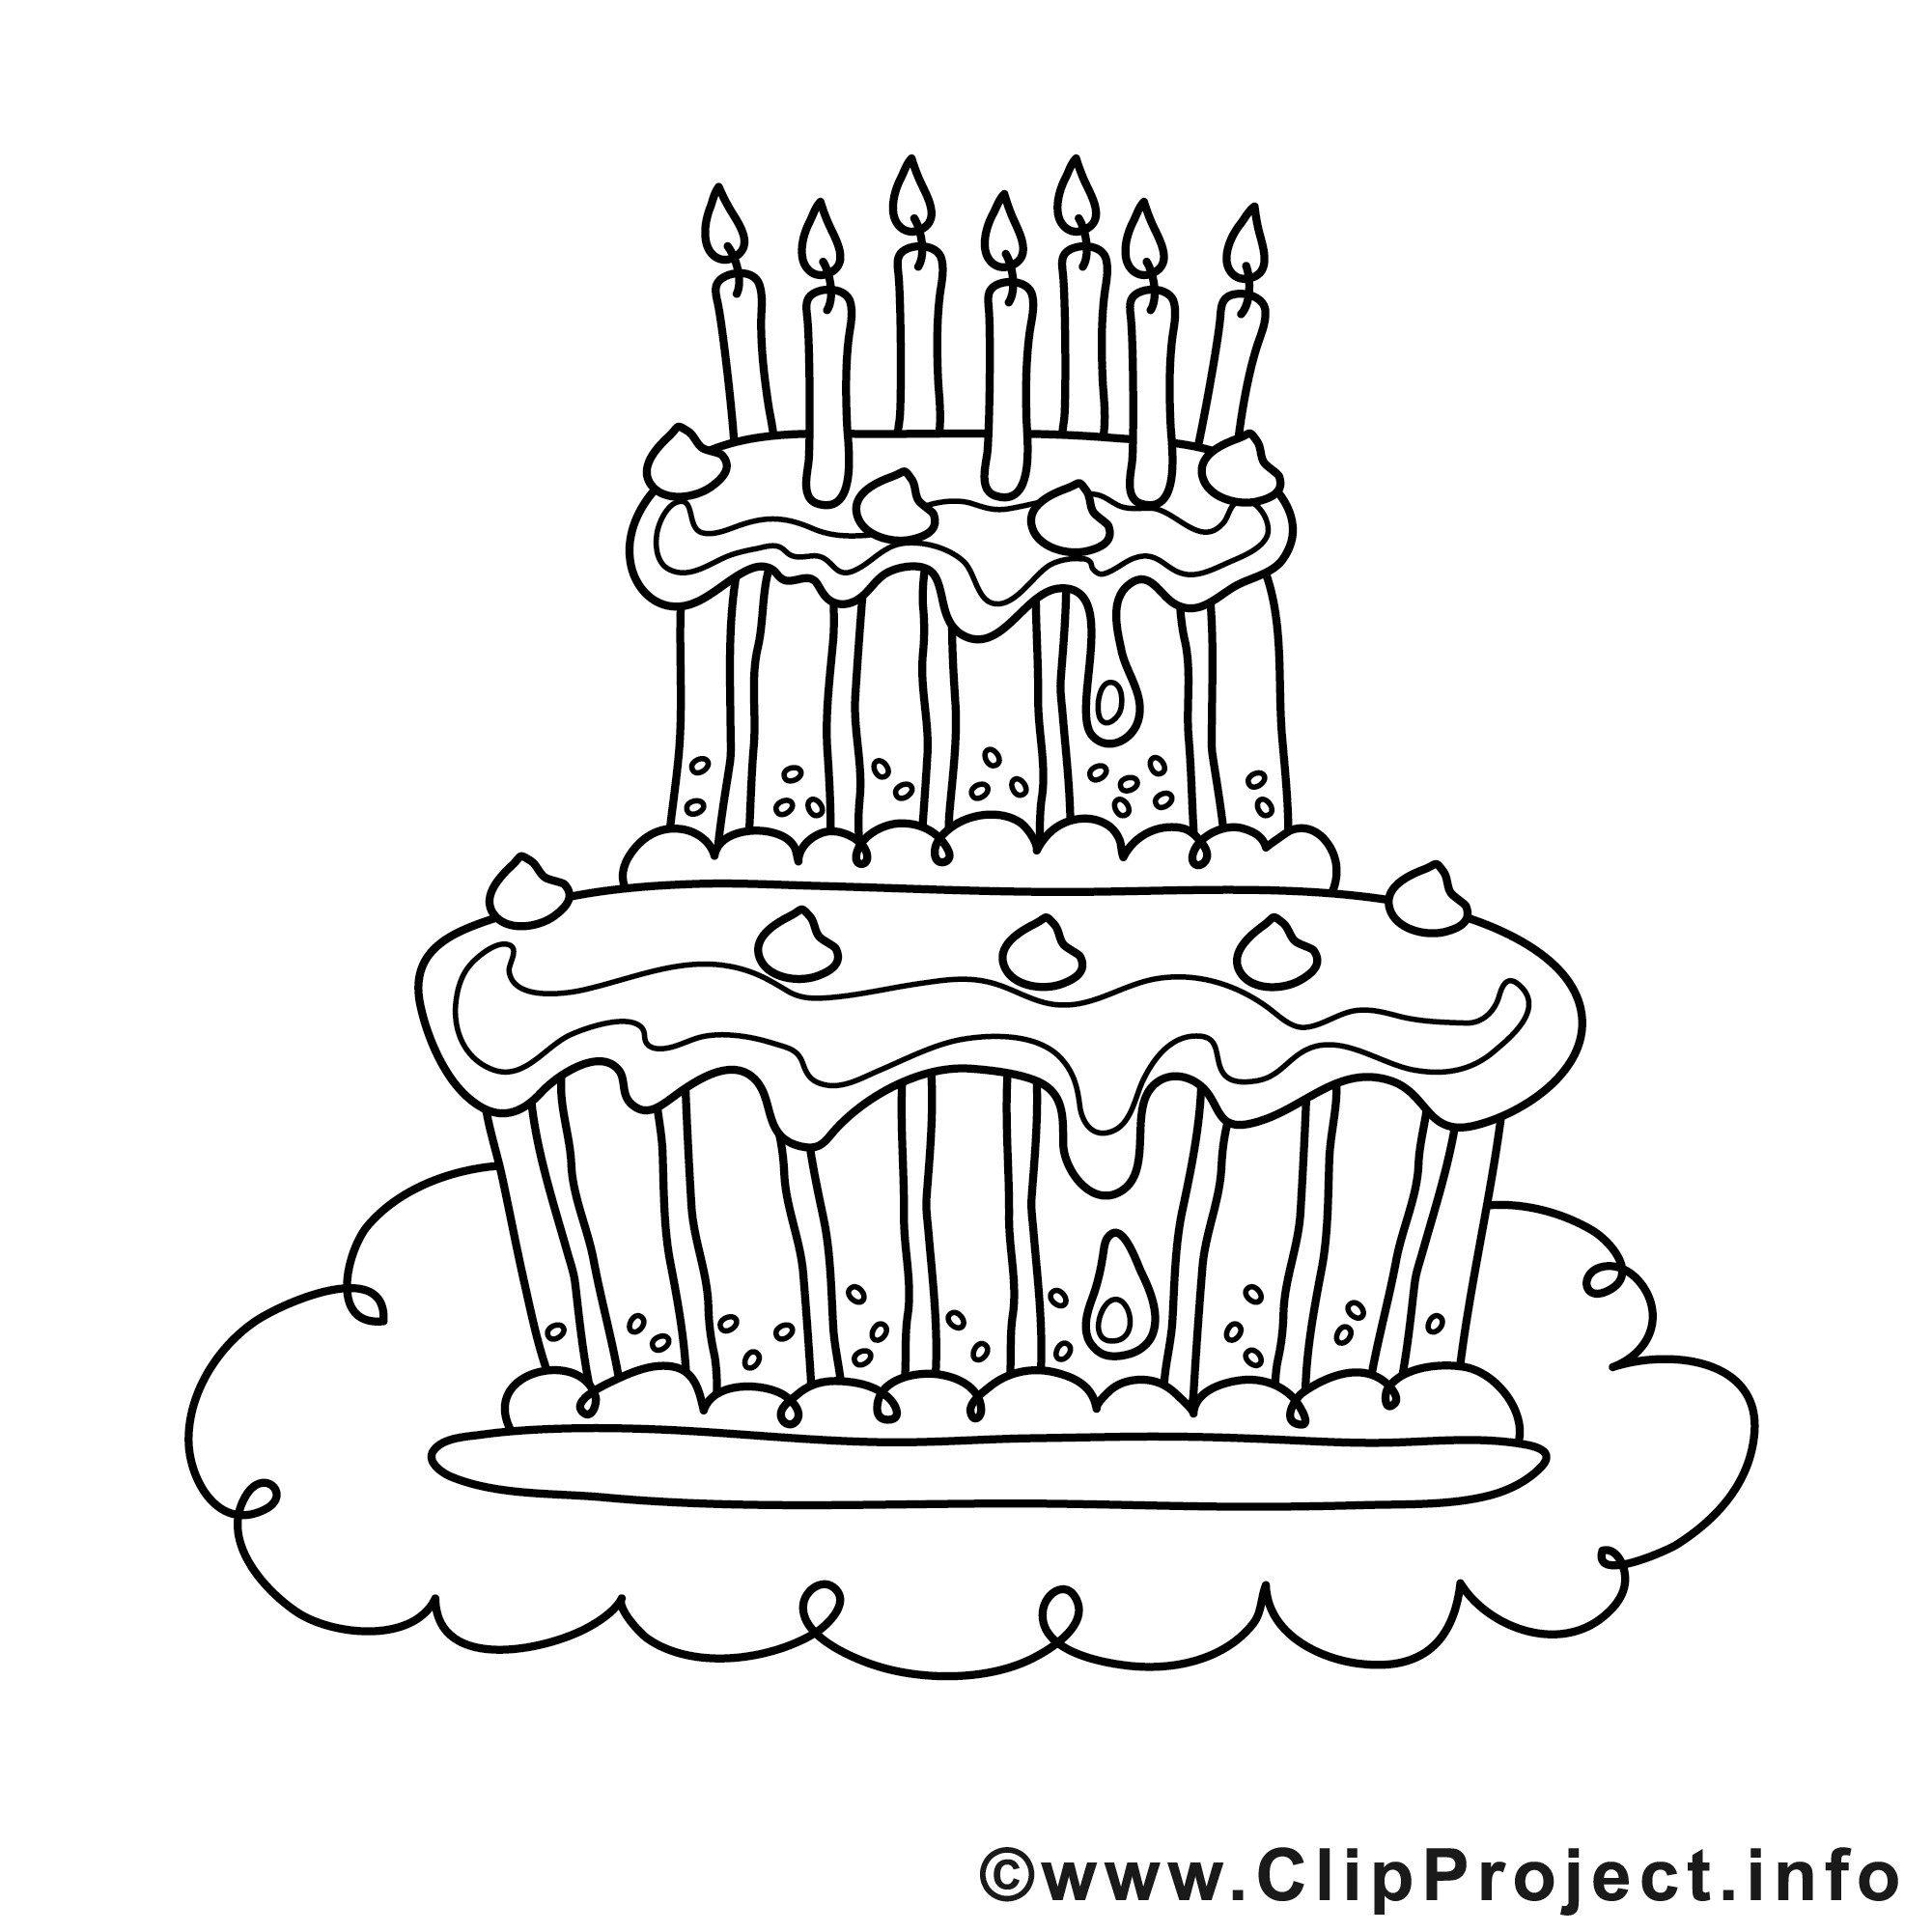 Geburtstagstorte Zum Ausmalen
 Kuchen Mit Kerzen Bild Zum Ausmalen Malvorlage